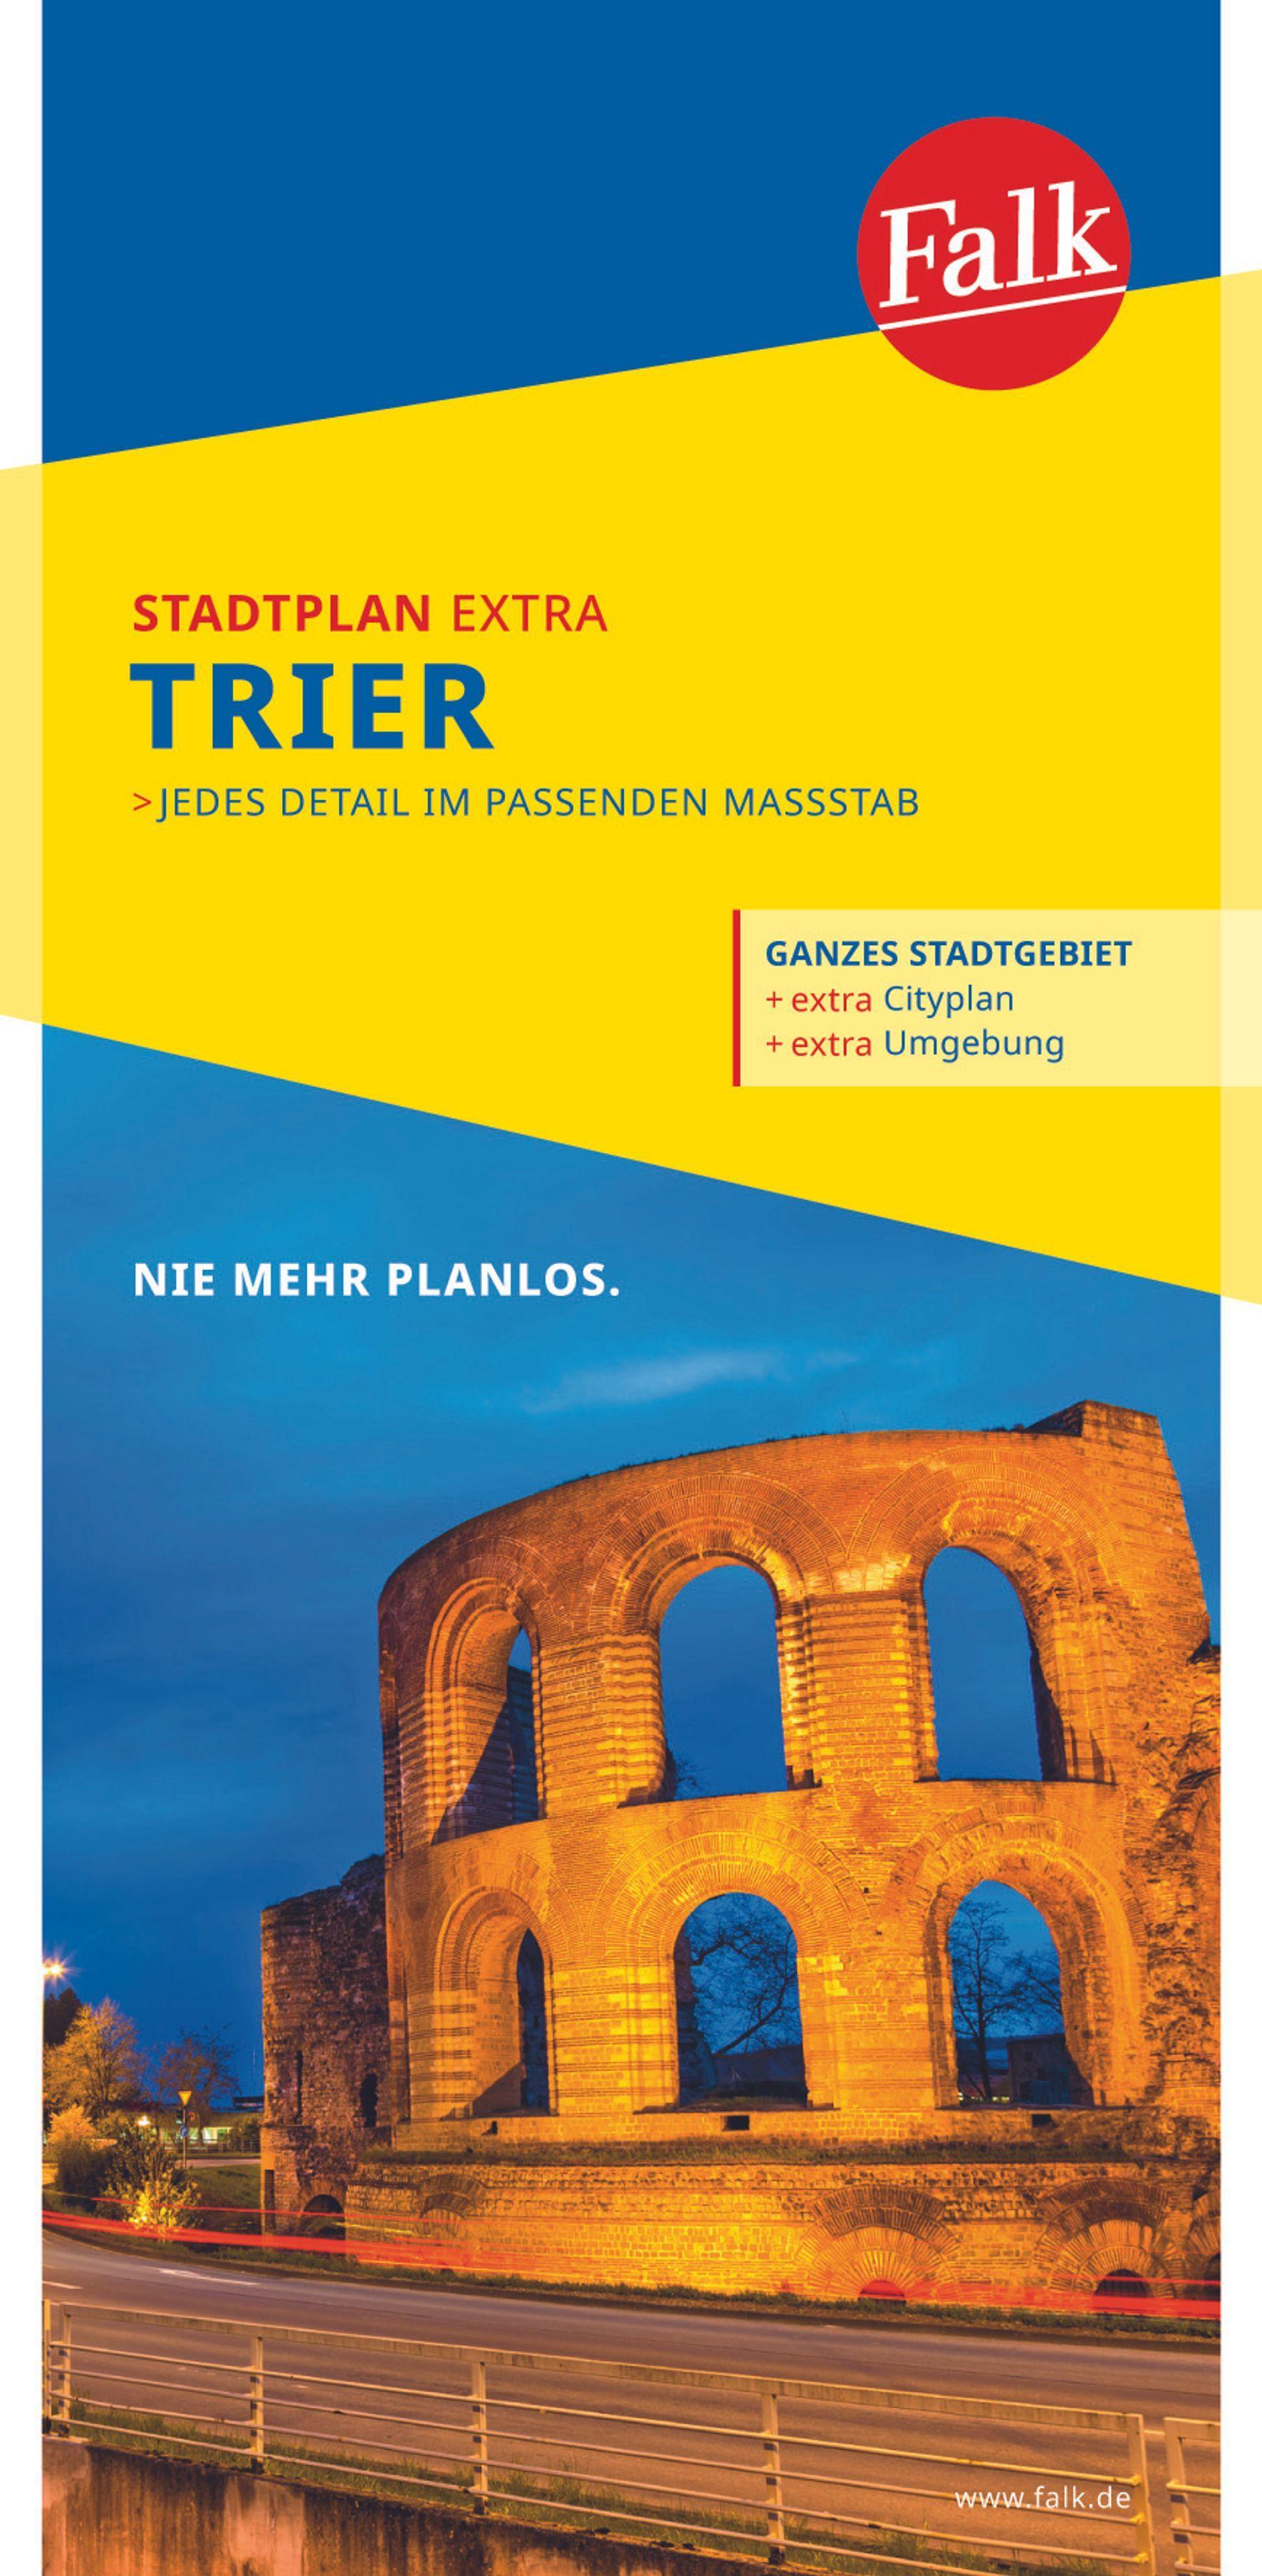 FALK STADTPLAN EXTRA Trier 1:20 000 (Land-)Karte Deutsch 2020